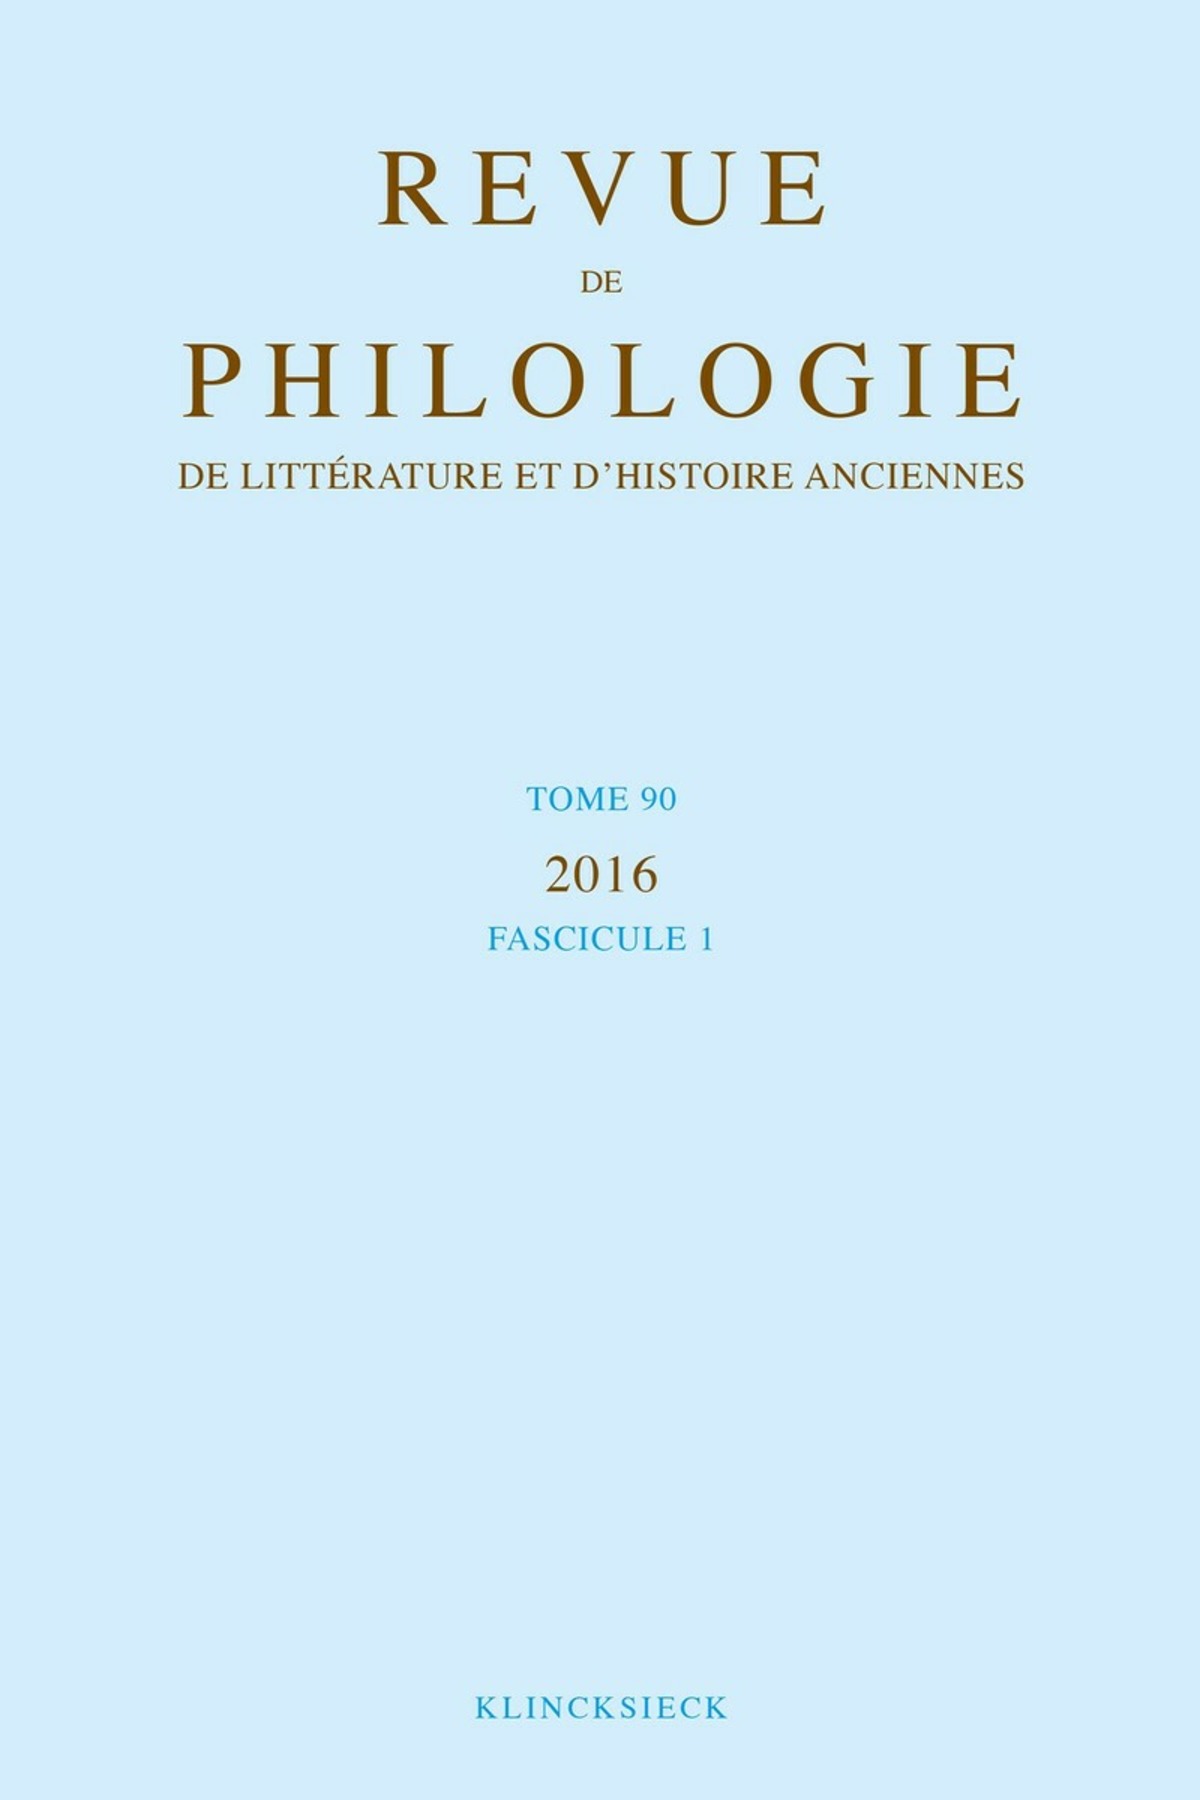 Revue de philologie, de littérature et d'histoire anciennes volume 90